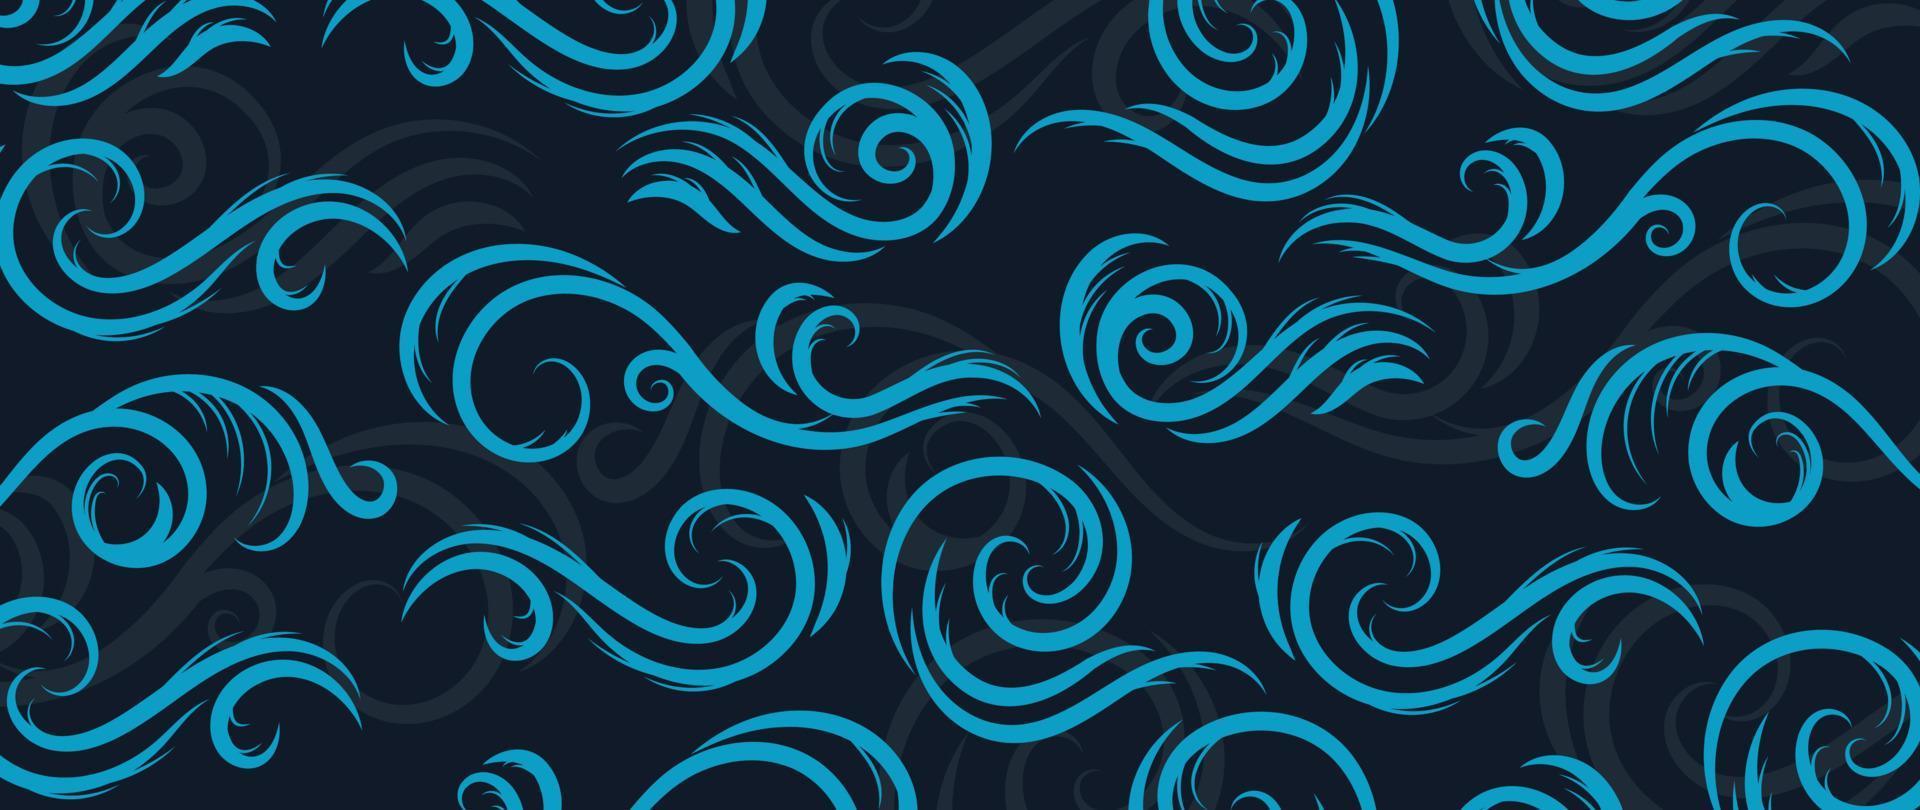 vecteur de modèle de vague japonais traditionnel. dessin au trait abstrait dessiné à la main vague de l'océan oriental, nuages, style de vent. illustration de conception d'art pour les impressions, le tissu, l'affiche, la décoration de la maison et le papier peint.